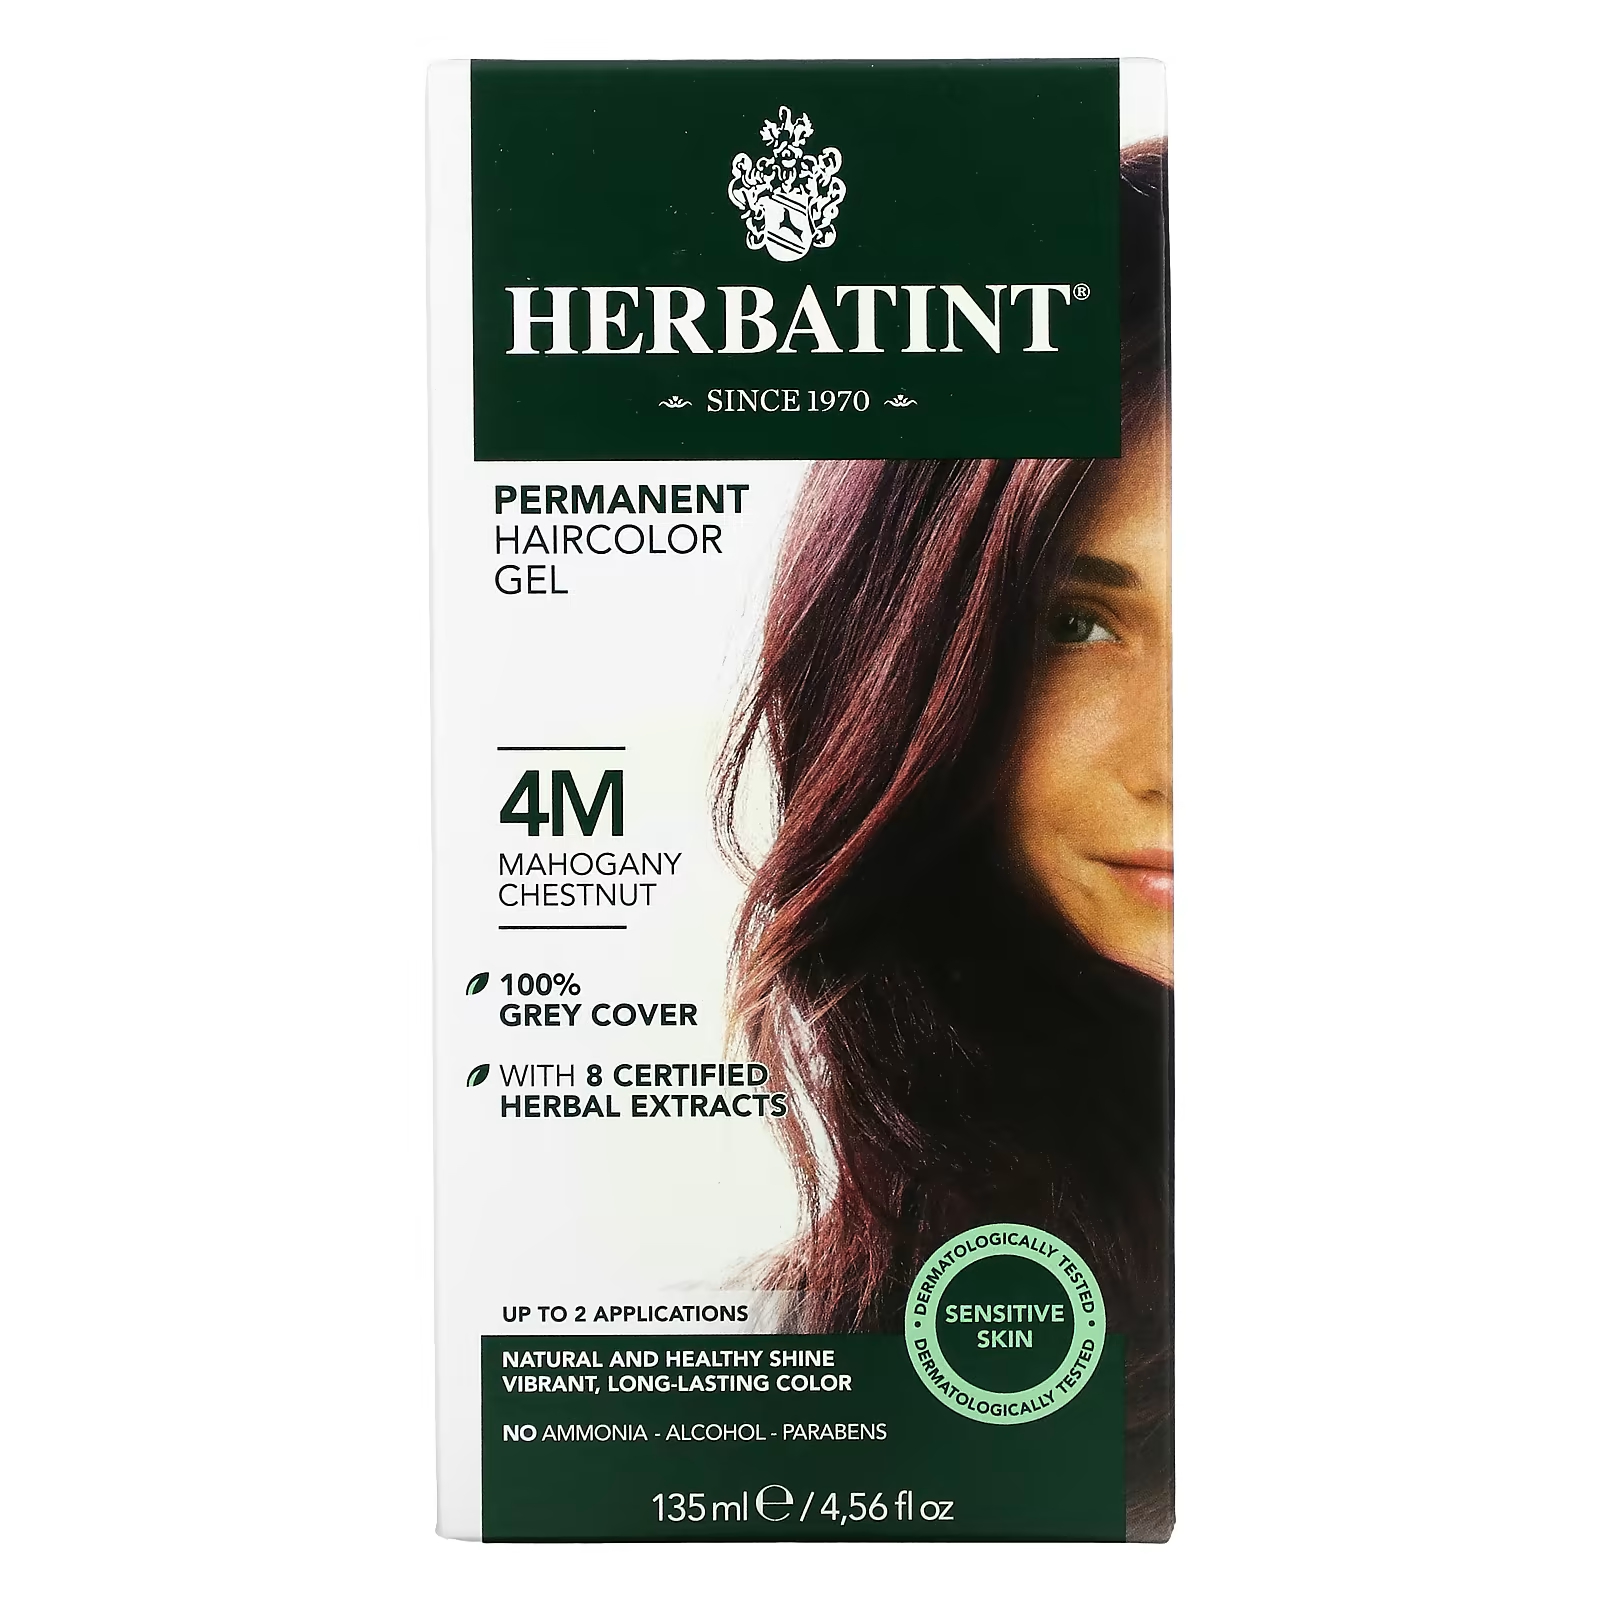 Гель-краска для волос Herbatint 4M красный каштан, 135 мл herbatint стойкая гель краска для волос 4m красное дерево и каштан 135 мл 4 56 жидкой унции